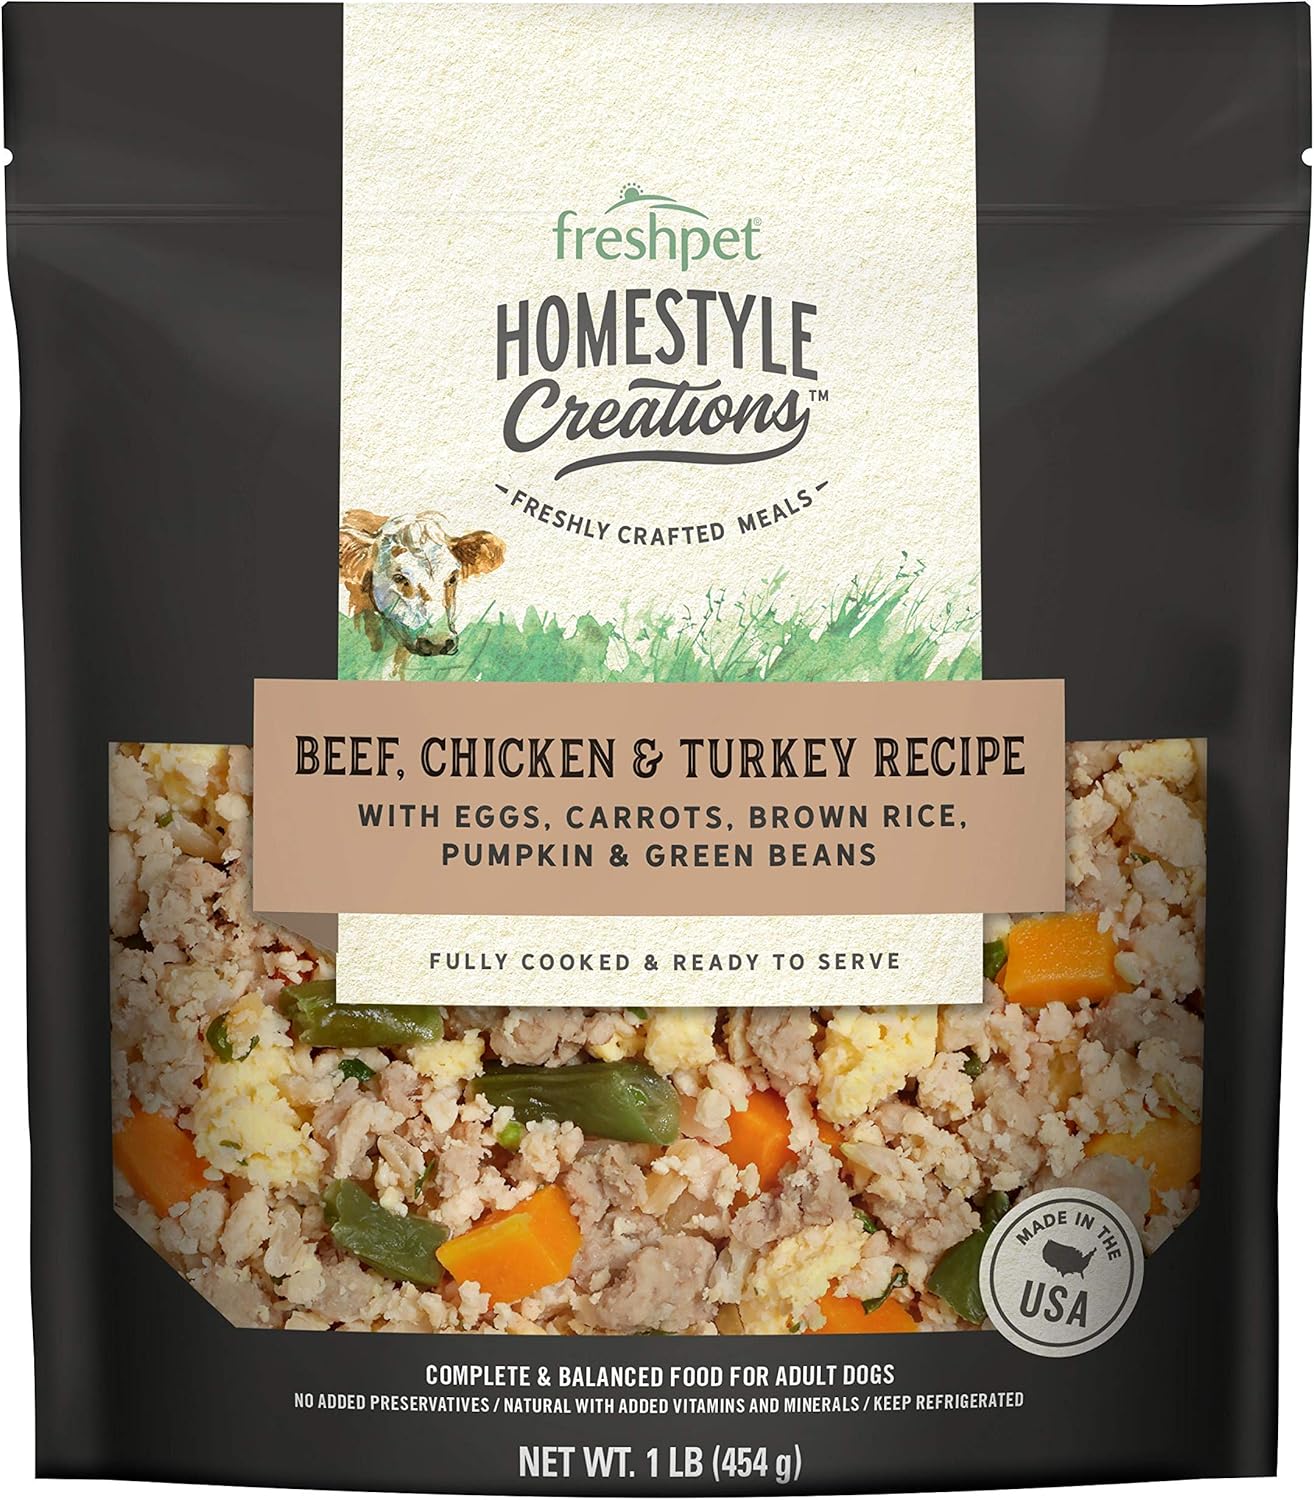 Freshpet Beef, Chicken & Turkey Homestyle Creations Dog Food, 16oz